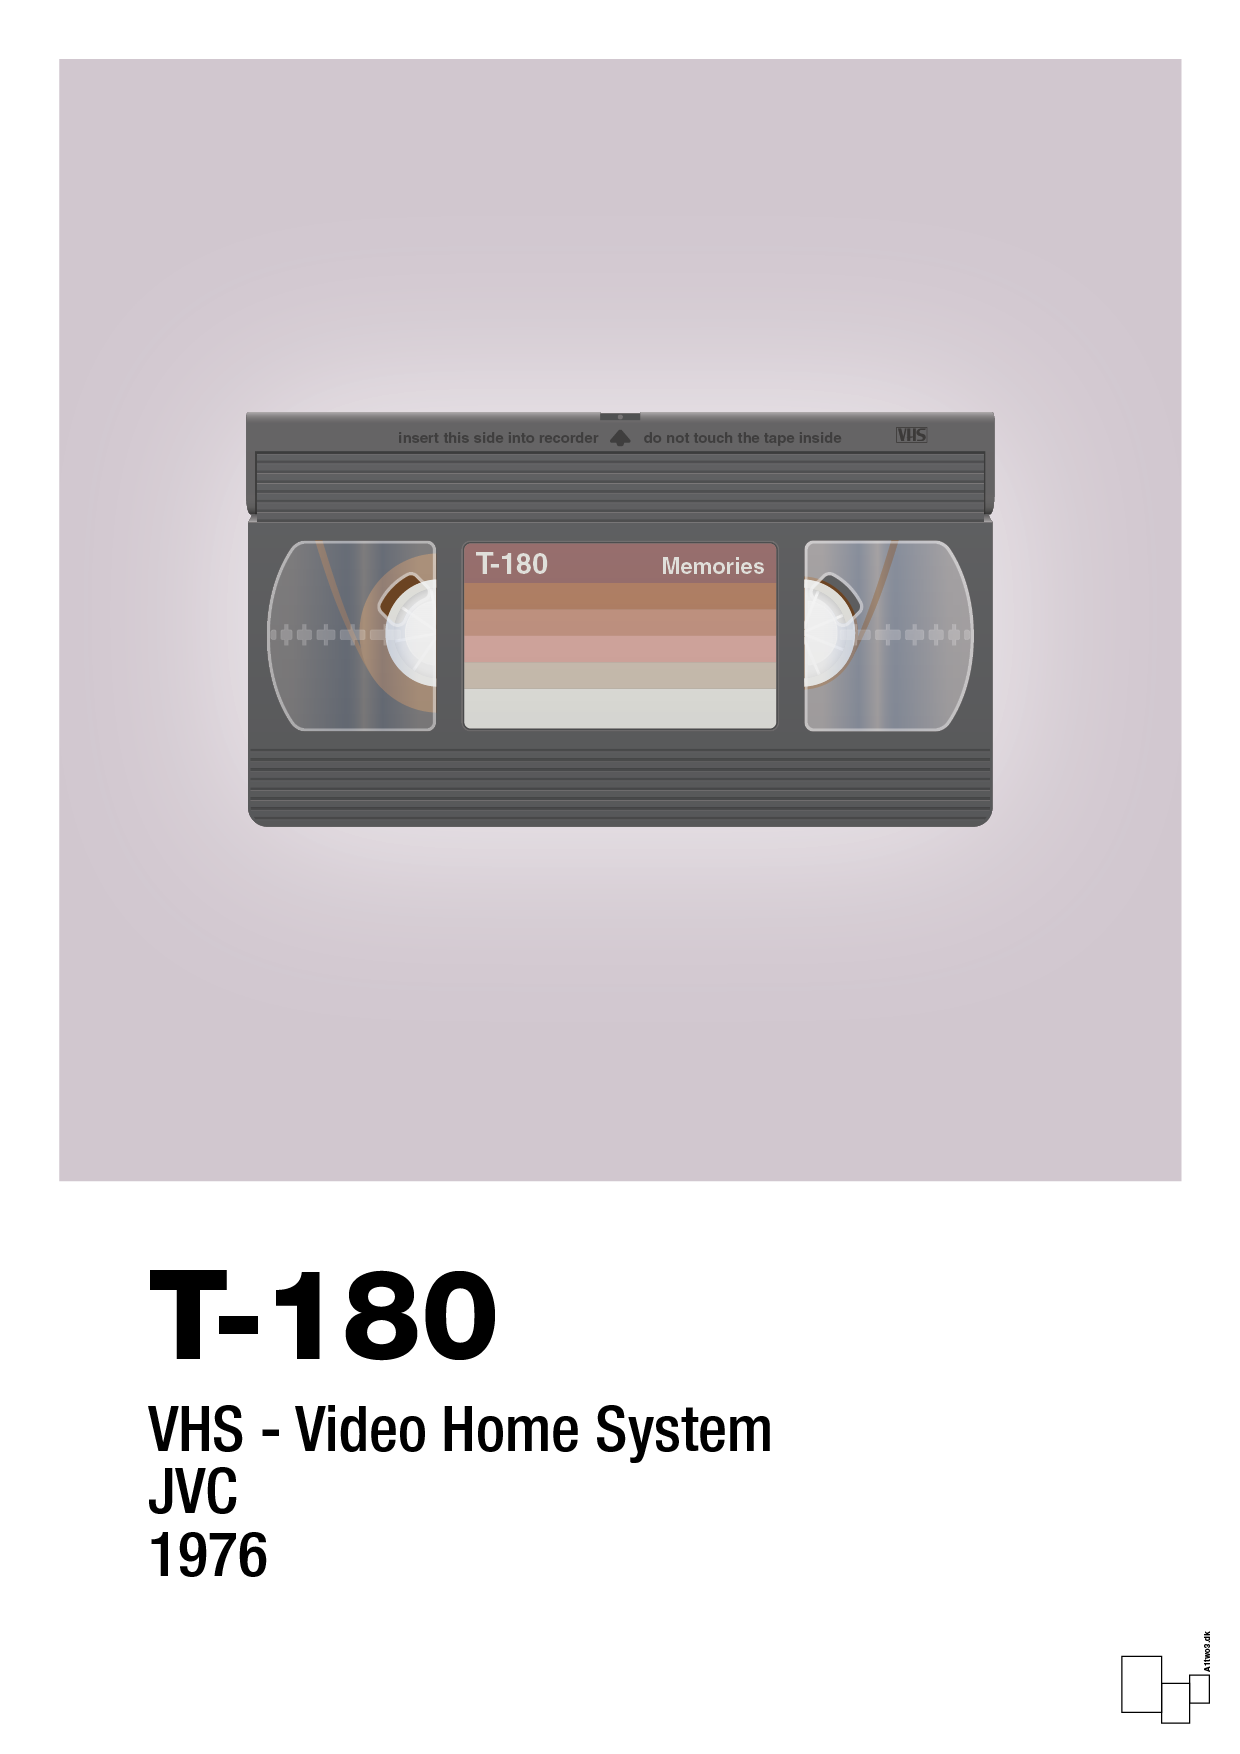 videobånd t-180 - Plakat med Grafik i Dusty Lilac